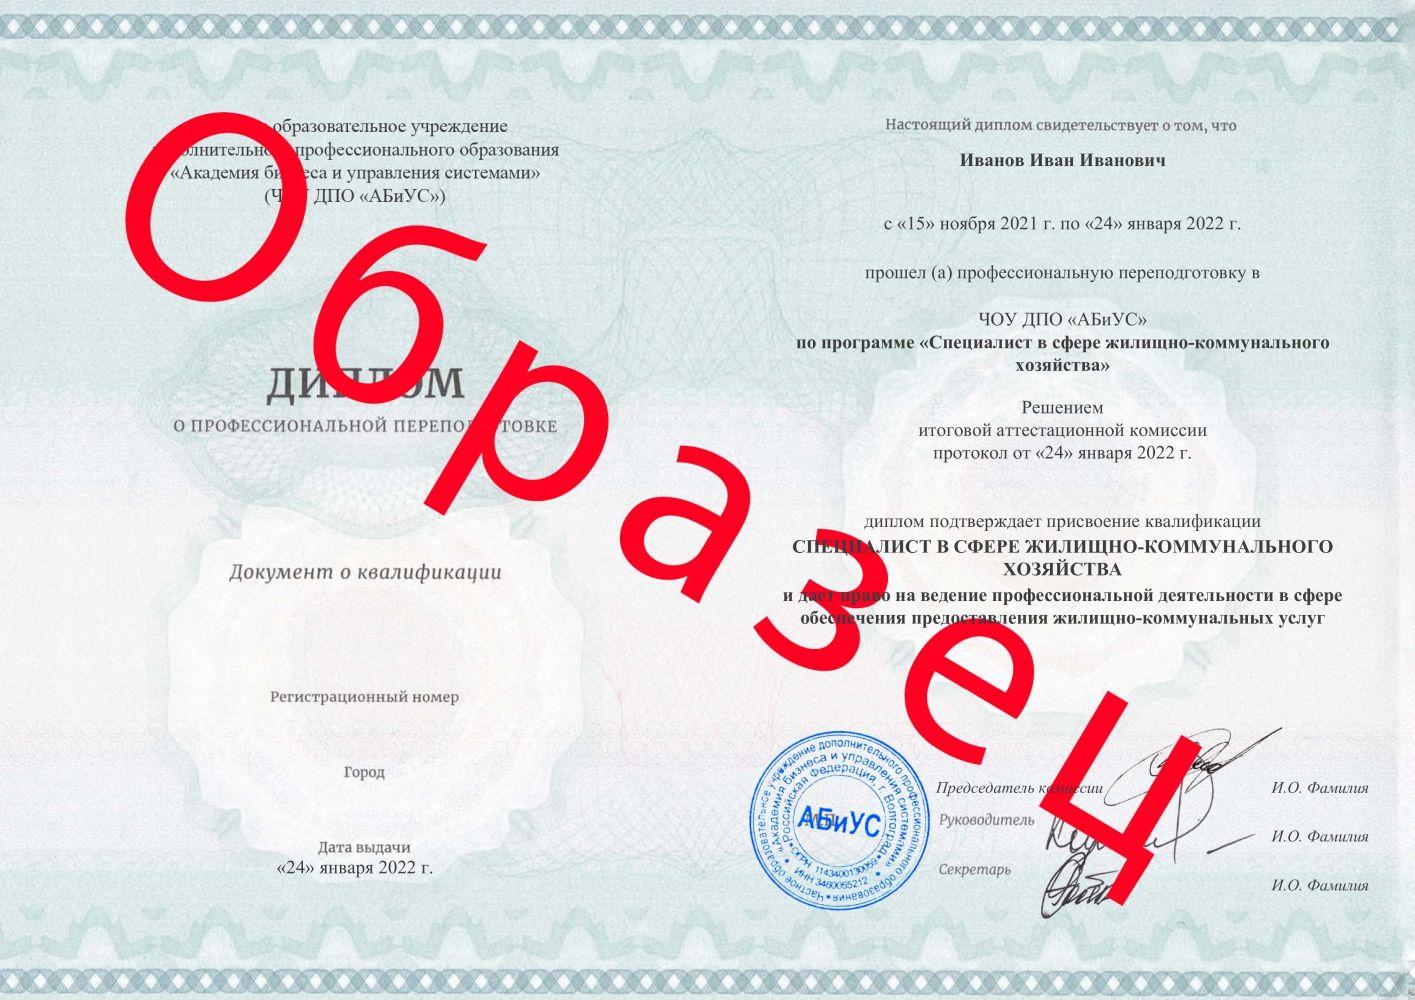 Диплом Специалист в сфере жилищно-коммунального хозяйства 260 часов 8800 руб.